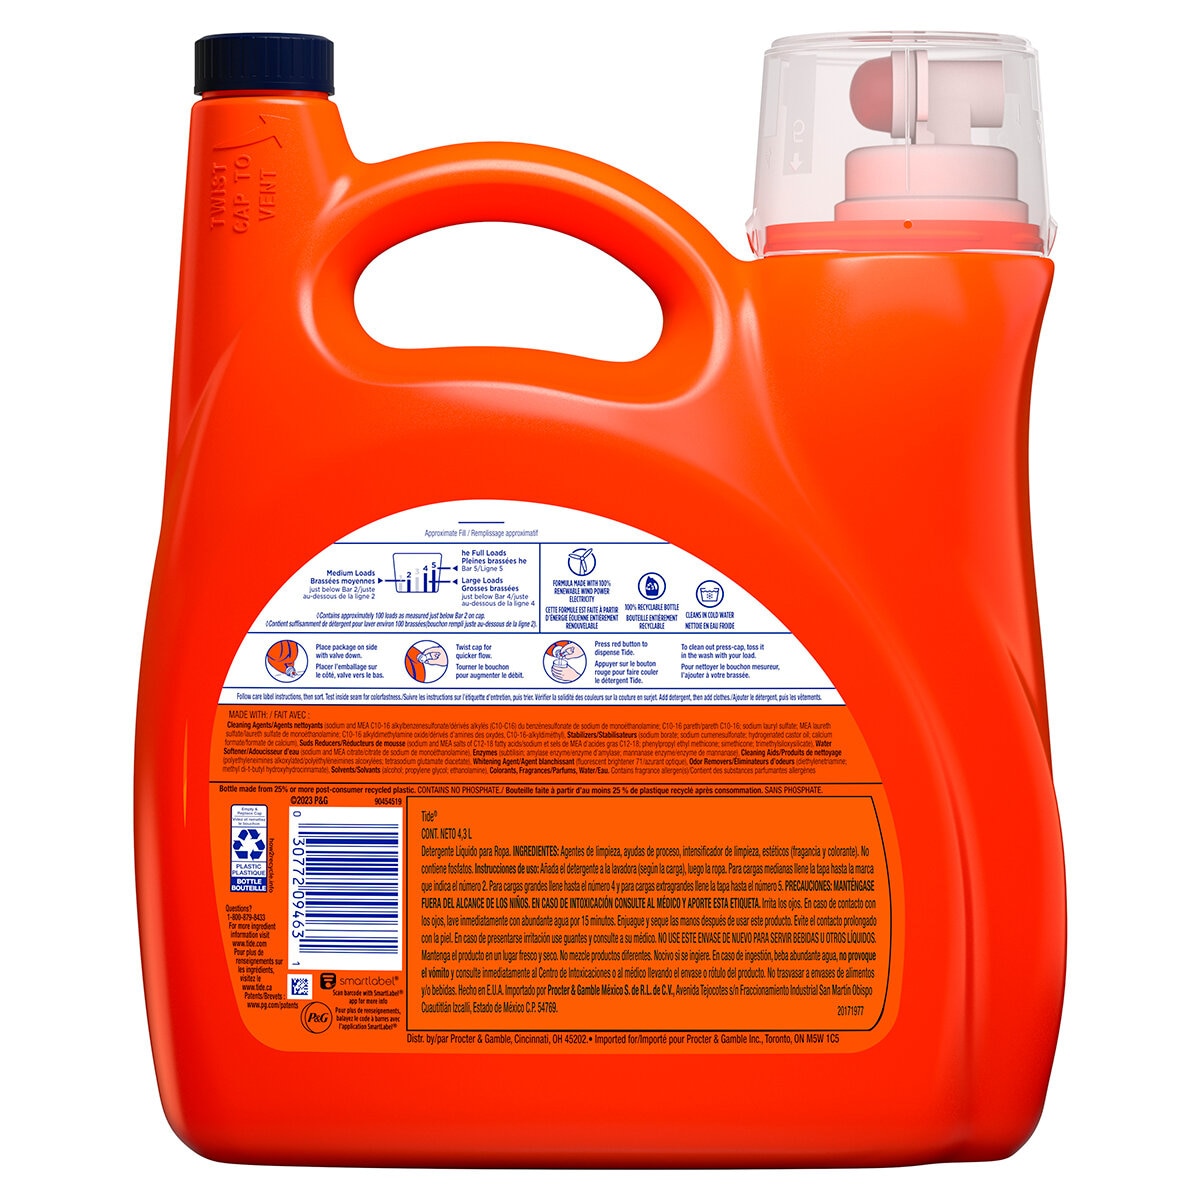 Tide Clean Breeze Detergente Liquido 4.3 l